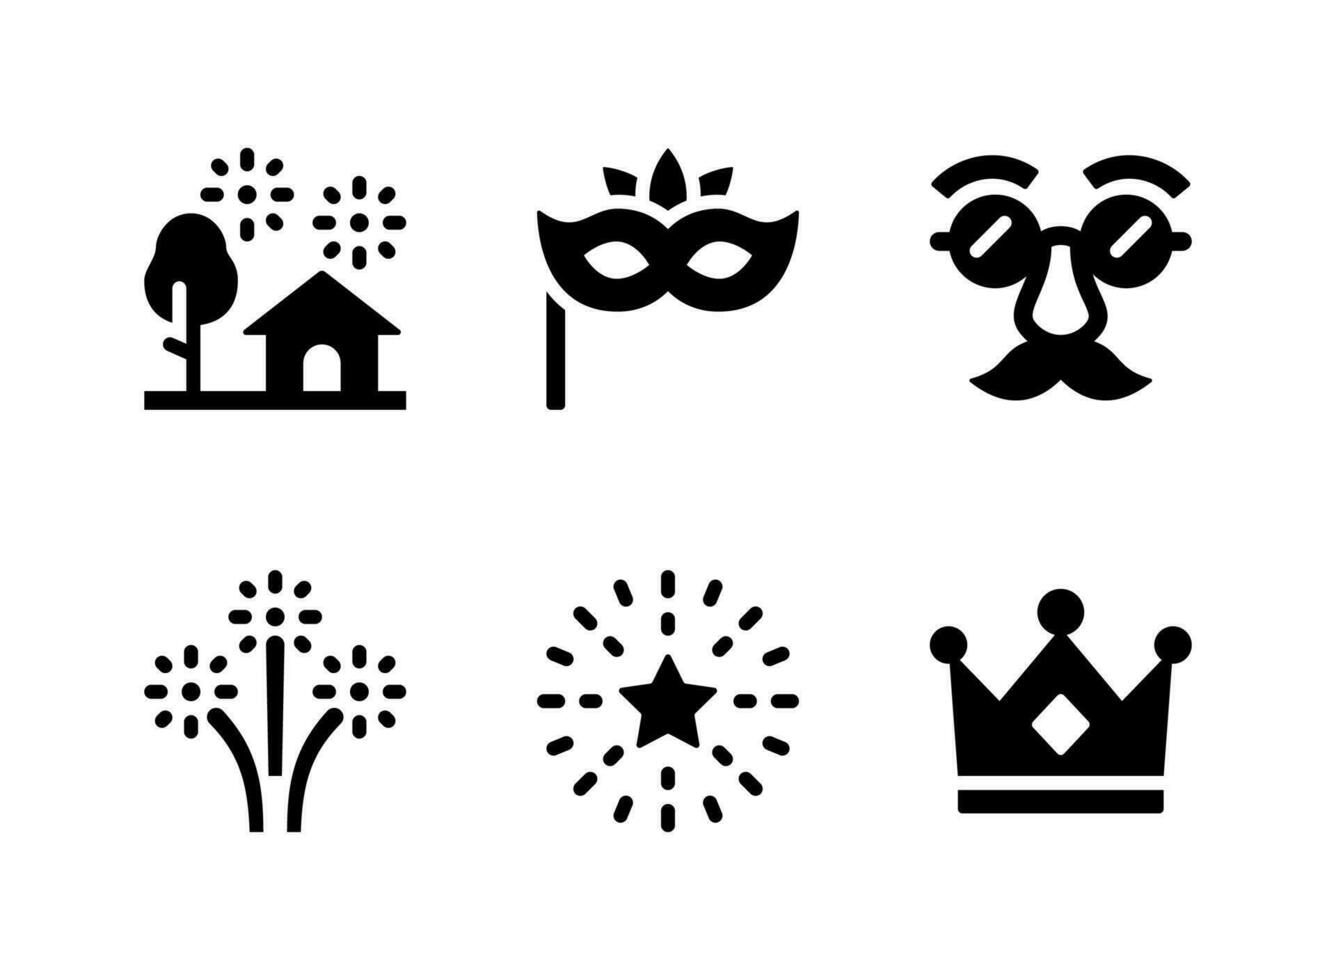 semplice set di icone solide vettoriali relative alla festa di capodanno. contiene icone come fuochi d'artificio, maschere da festa, maschere da travestimento e altro ancora.